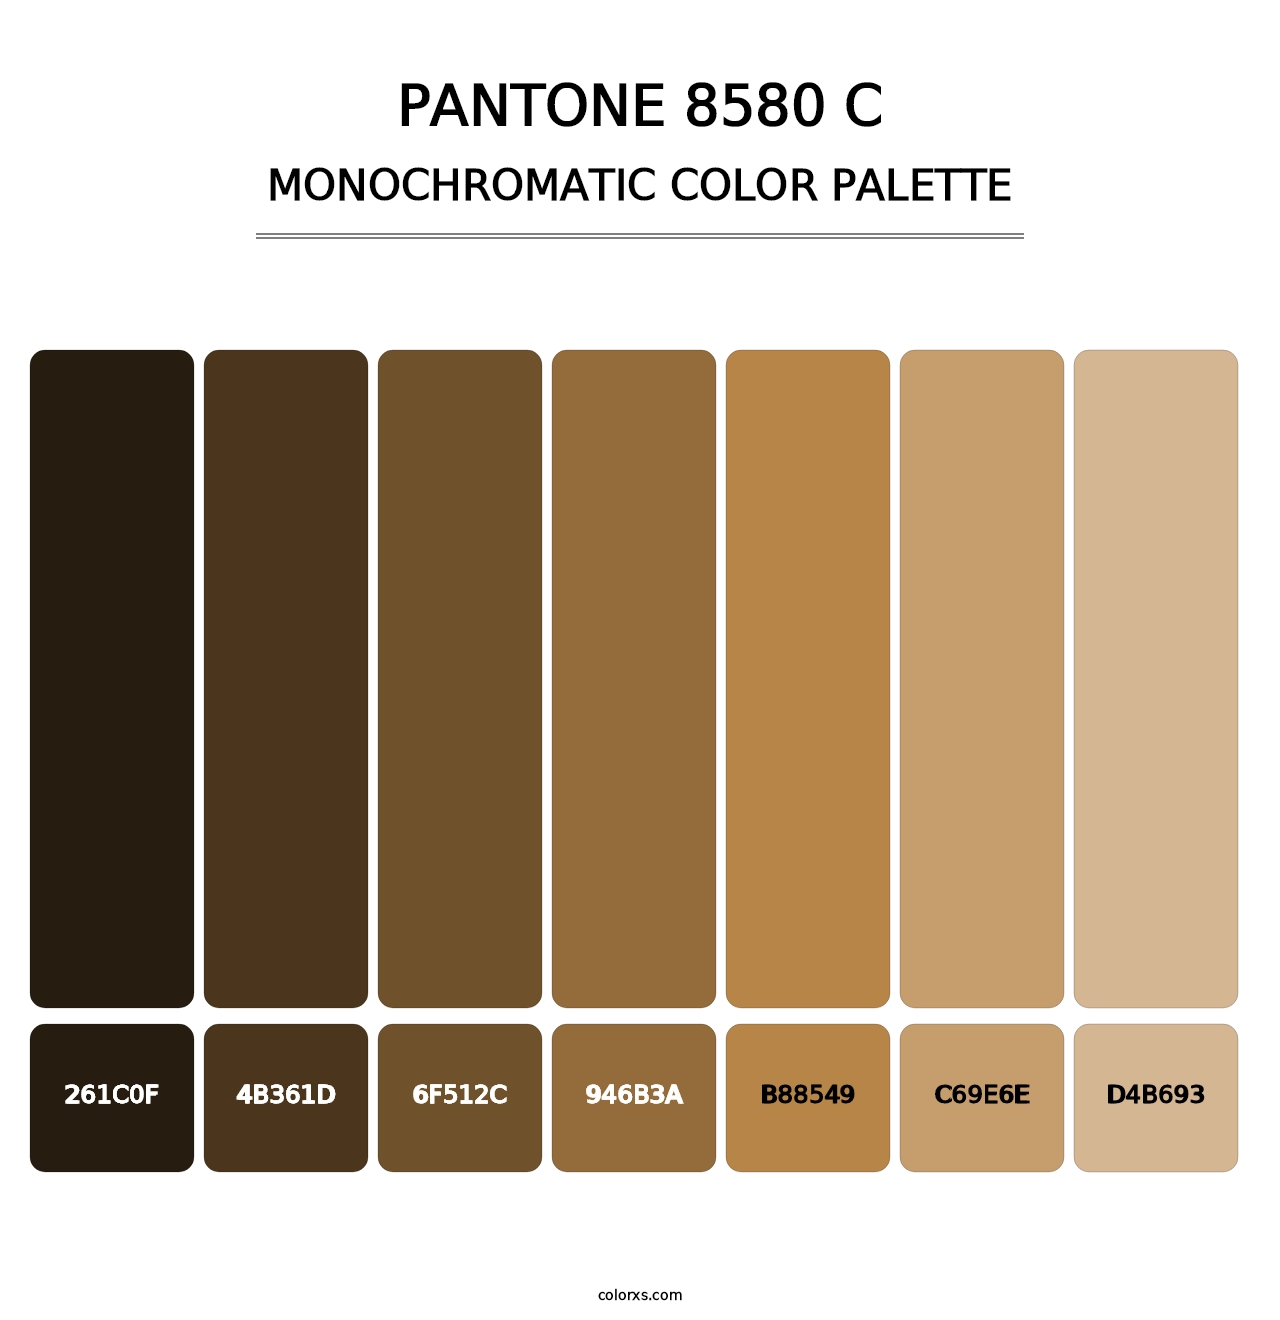 PANTONE 8580 C - Monochromatic Color Palette